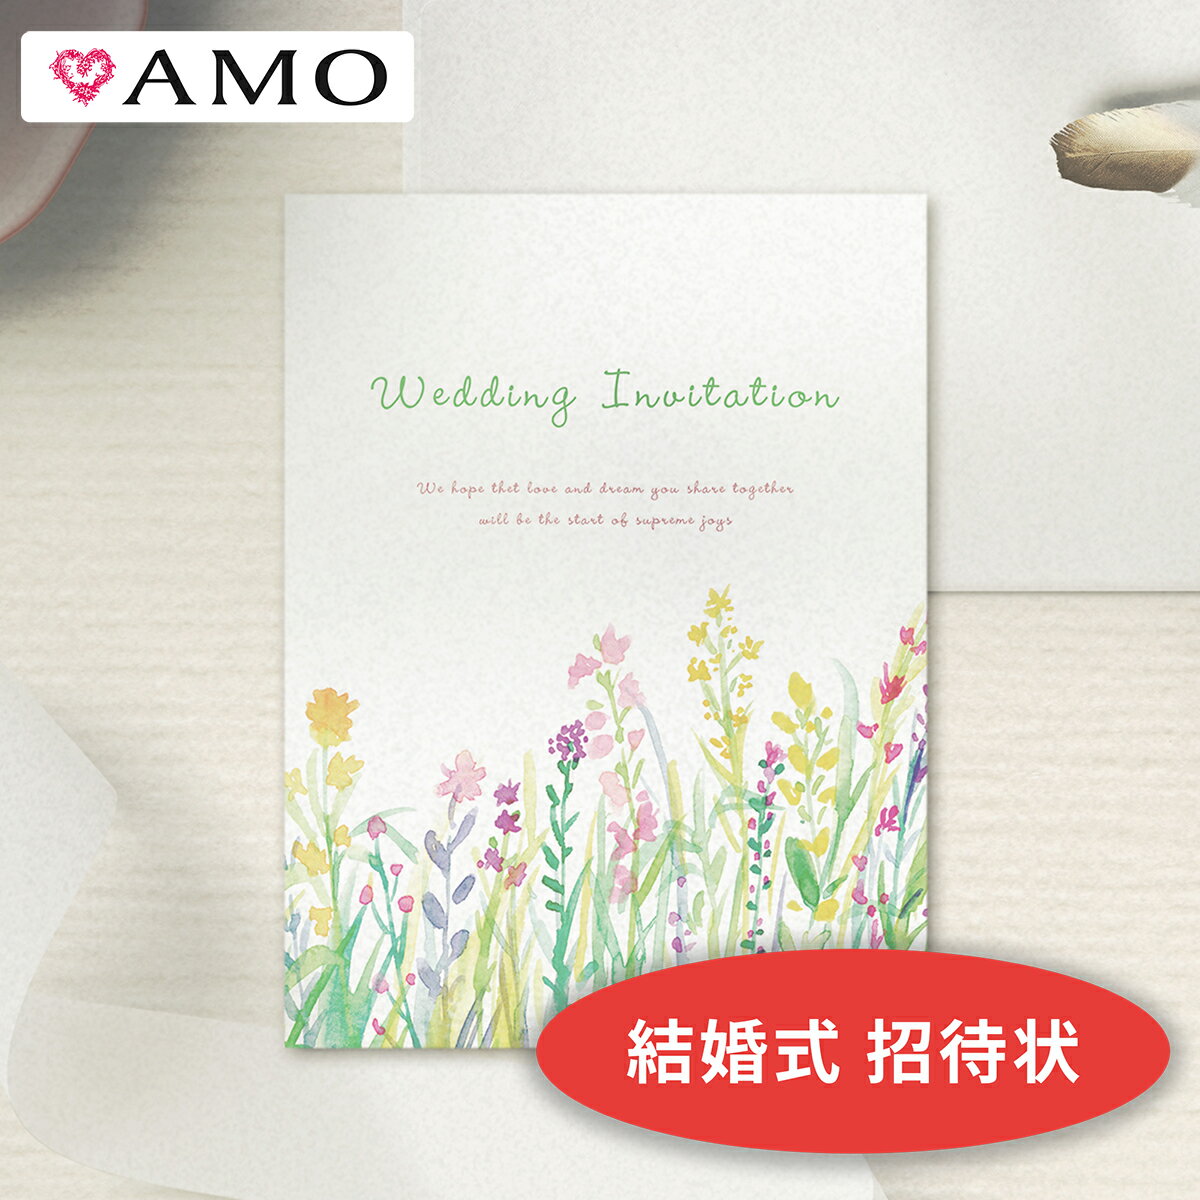 AMO 結婚式 招待状 手作りキット 花畑ホワイト (封筒・返信ハガキ付き) インクジェット対応 【30部までメール便可】